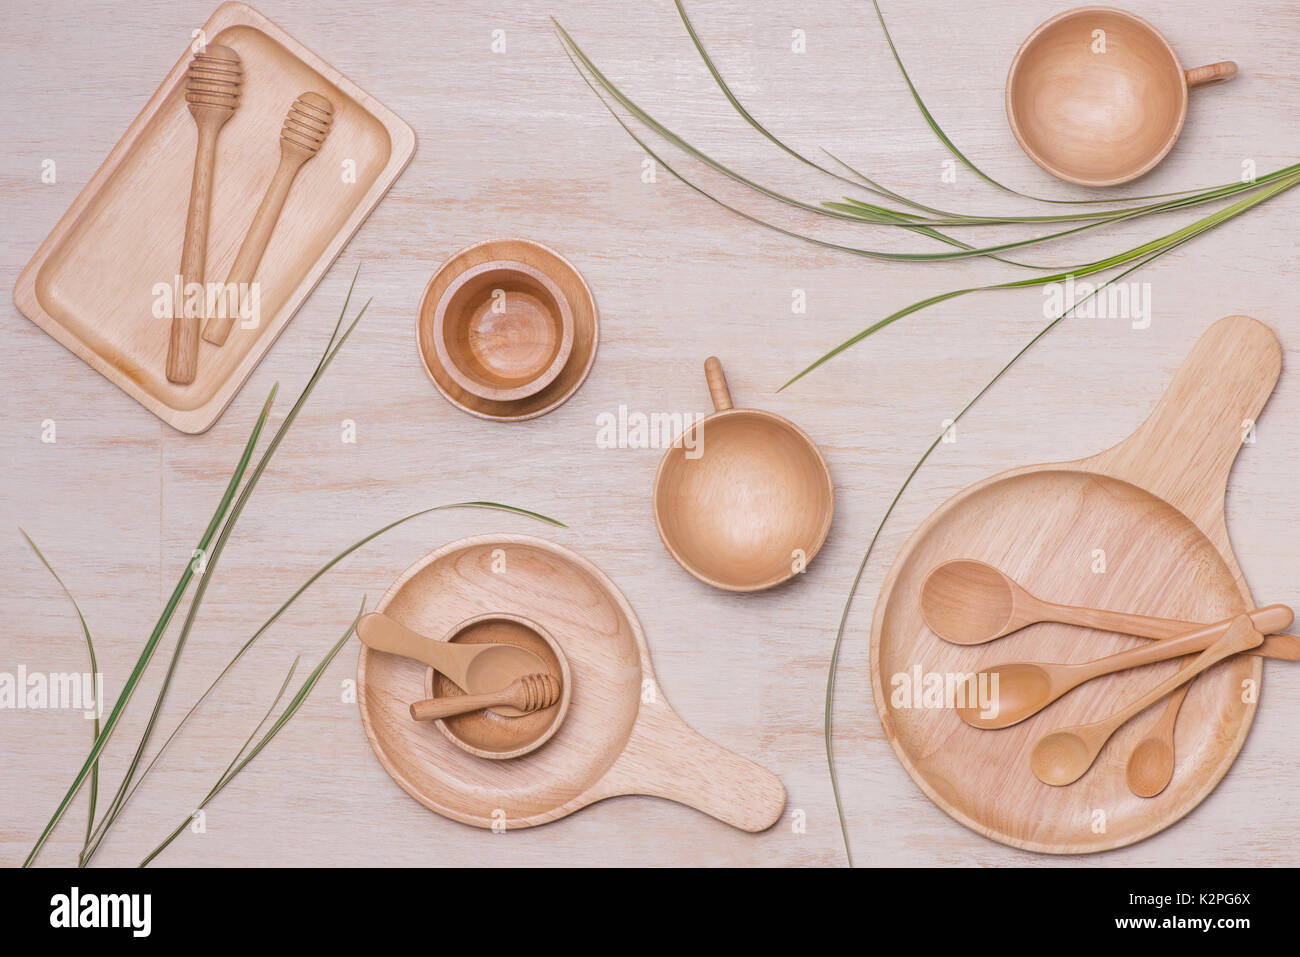 Concepto de diseño de boceto arious menaje utensilios de cocina establecido en la tabla. Foto de stock